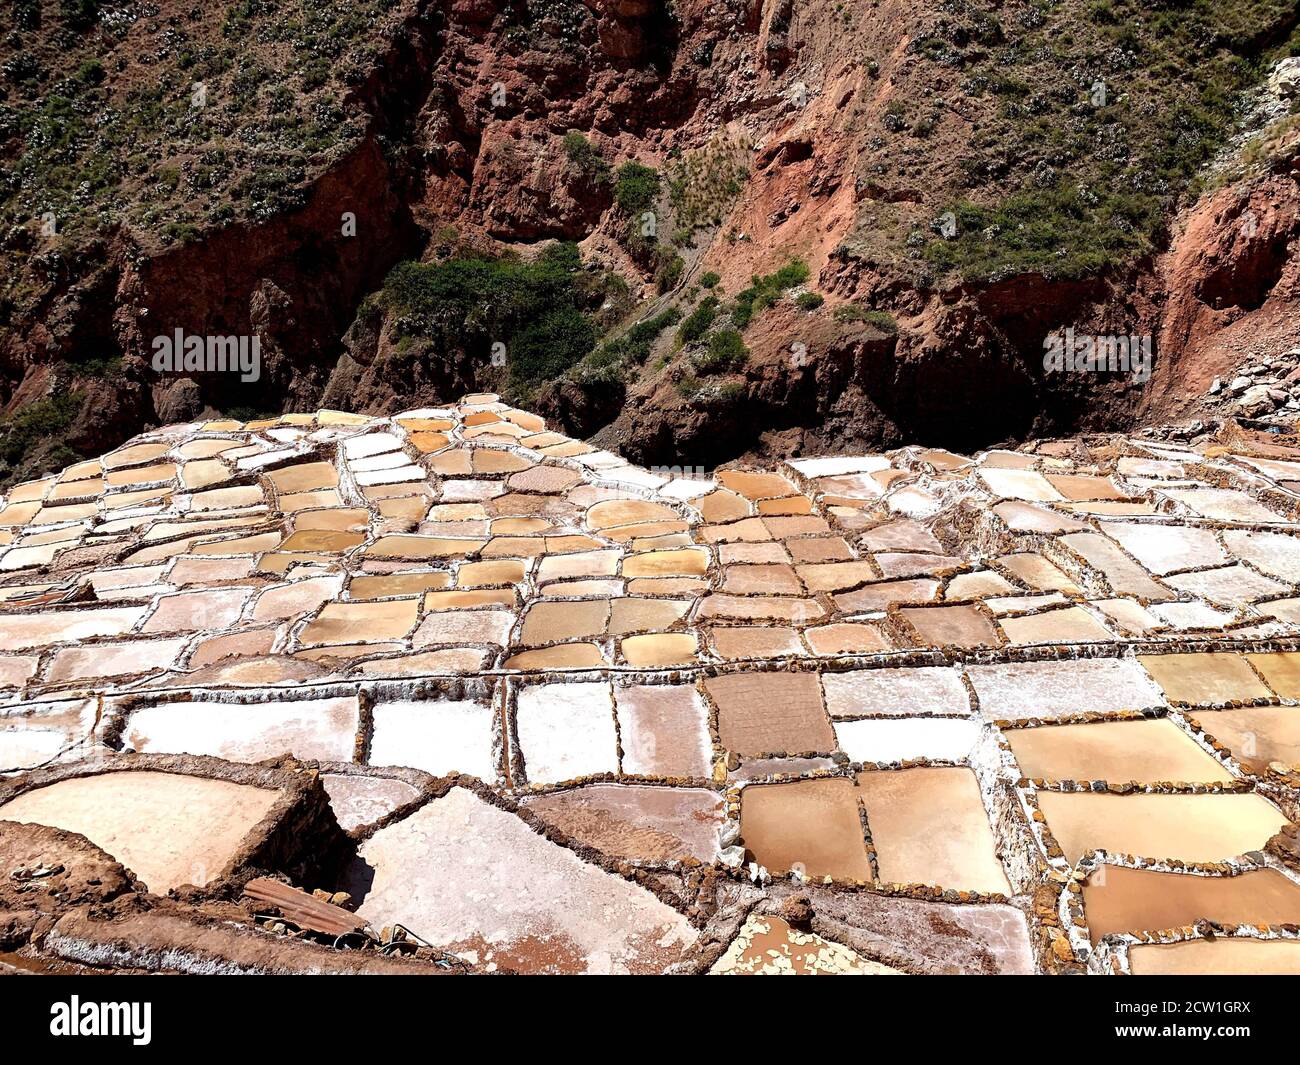 Cascade de mines de sel Salineras de Maras dans les Andes péruviennes. Paysage pittoresque d'étangs et de casseroles de sel. Extraction de sel au Pérou. Banque D'Images